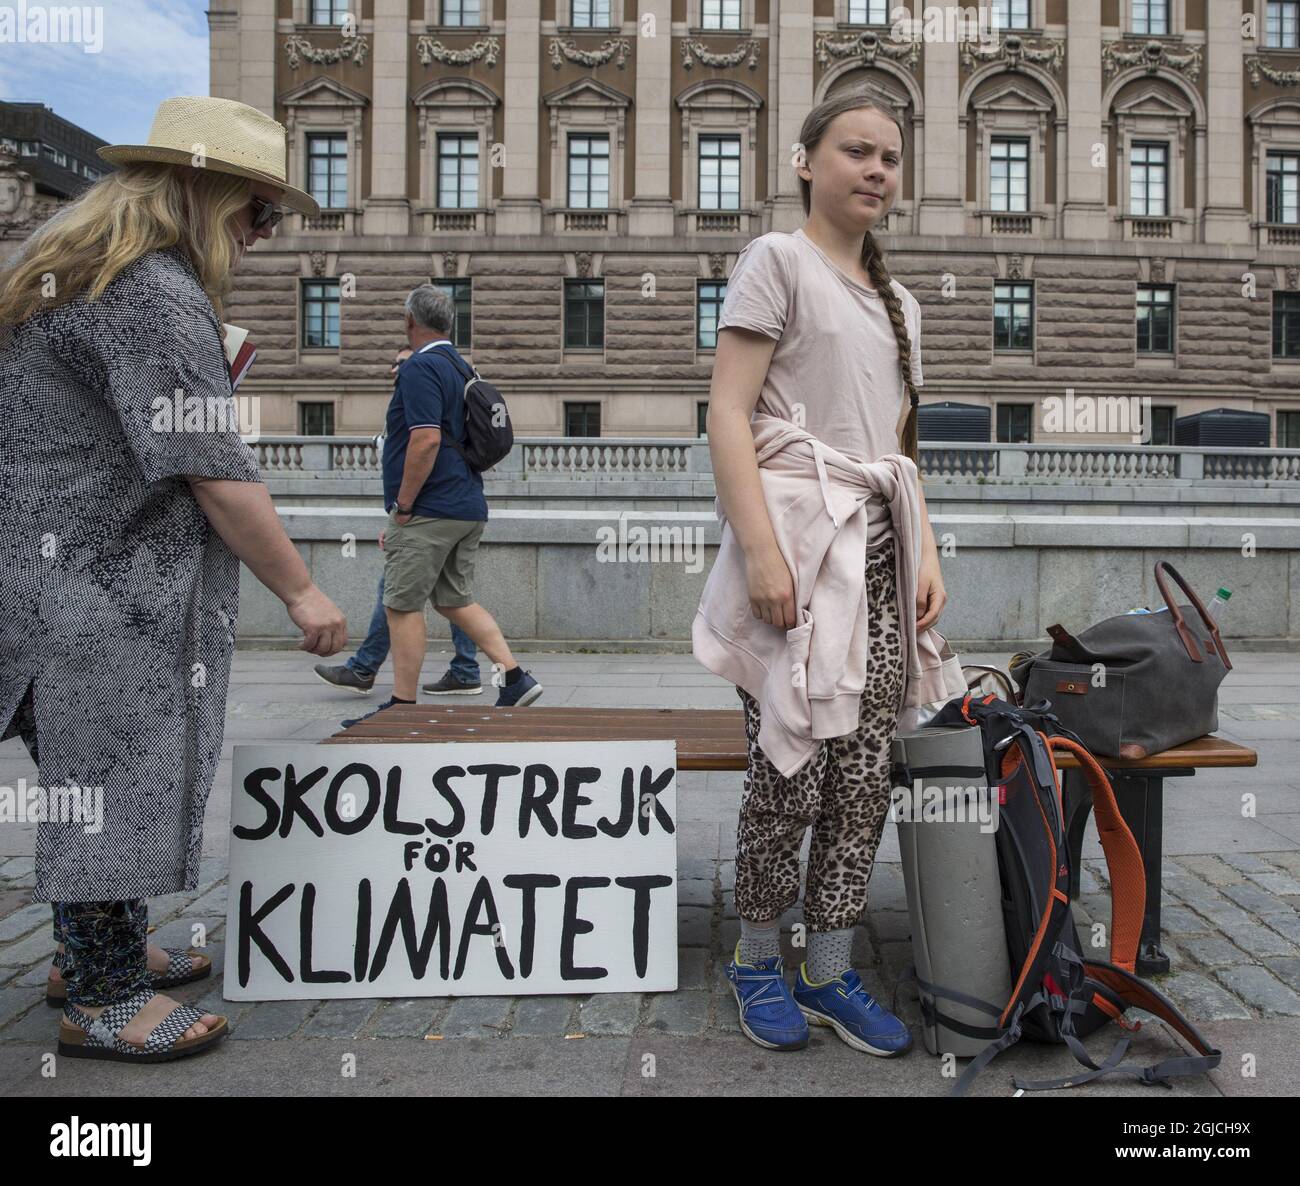 L'attivista svedese per il clima Greta Thunberg durante il suo sciopero scolastico del venerdì per l'azione enivronmentale #FridaysForFuture fuori dal parlamento svedese a Stoccolma Svezia 7 giugno (c) Johan Jeppsson / TT / code 2551 Foto Stock